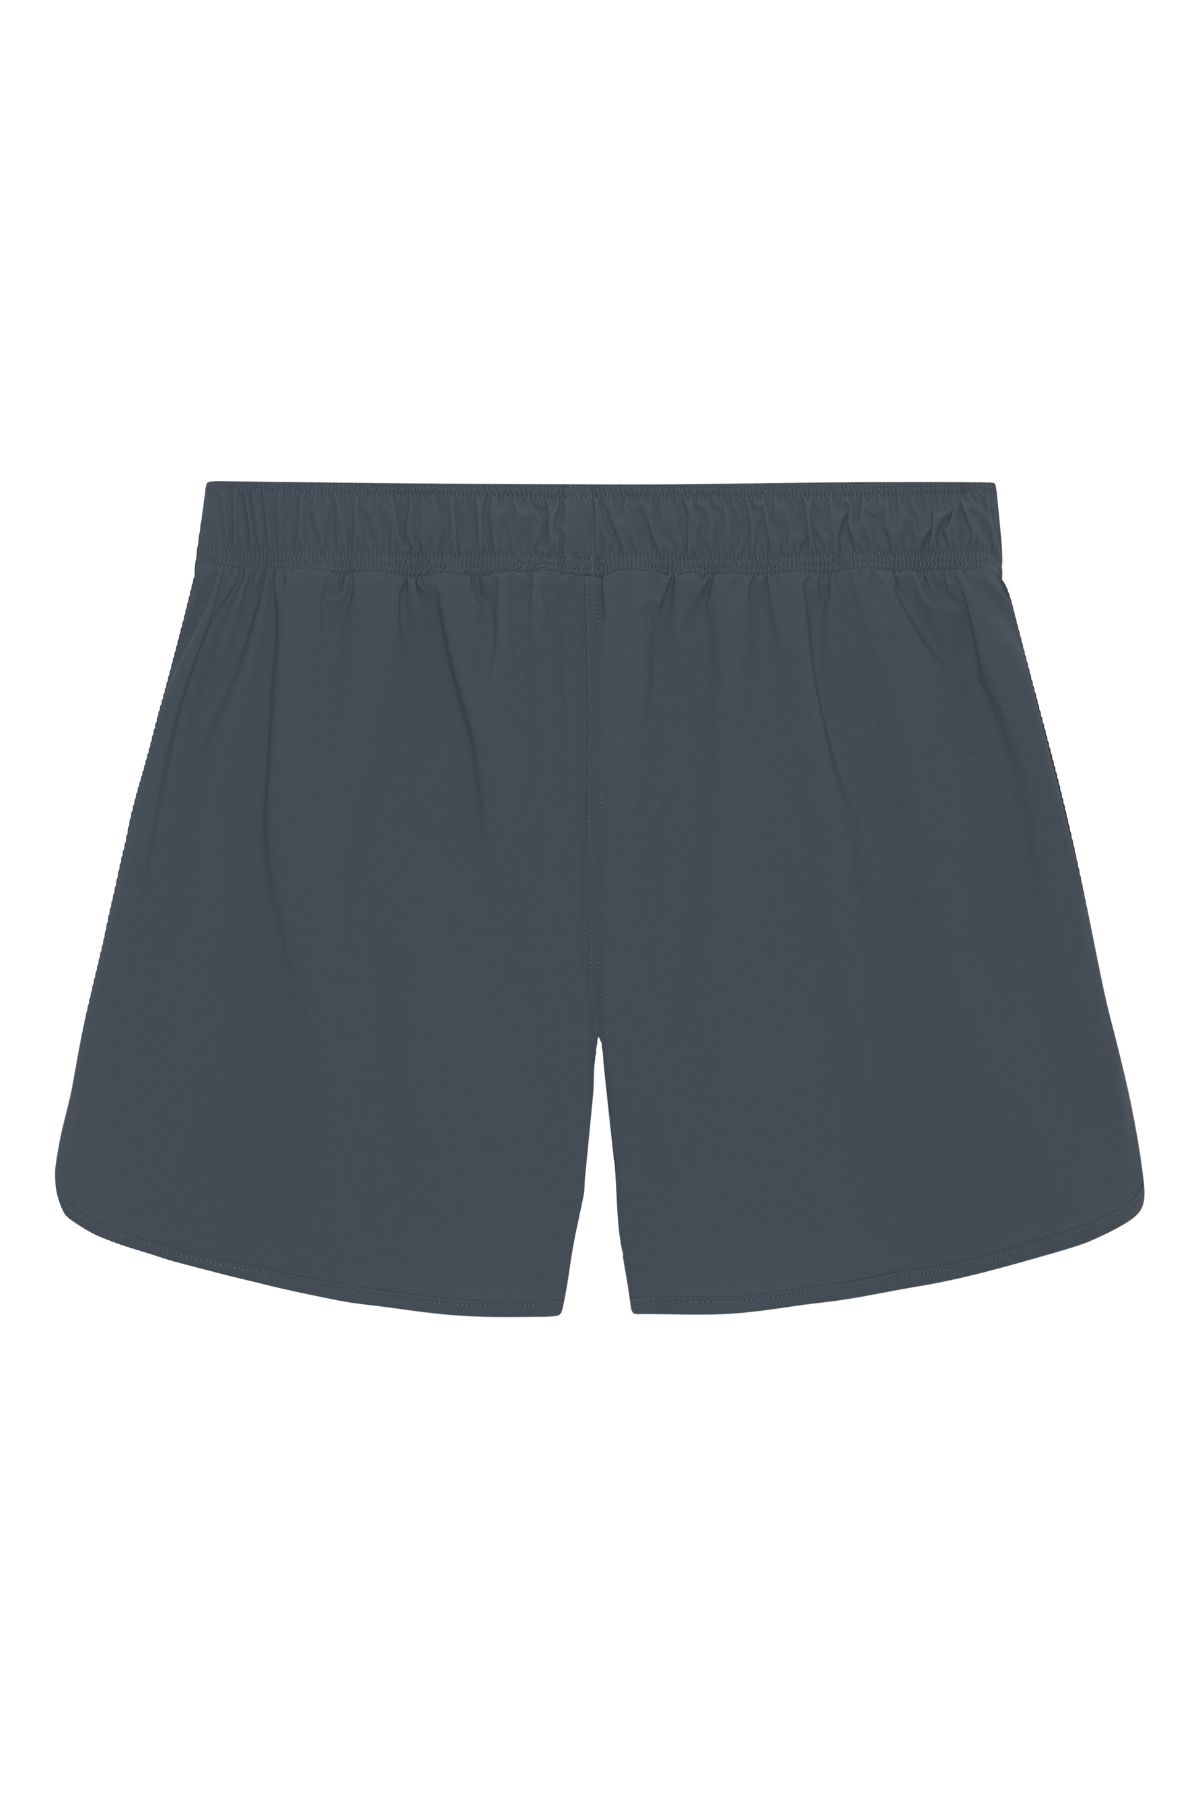 Balian herre shorts - Ash